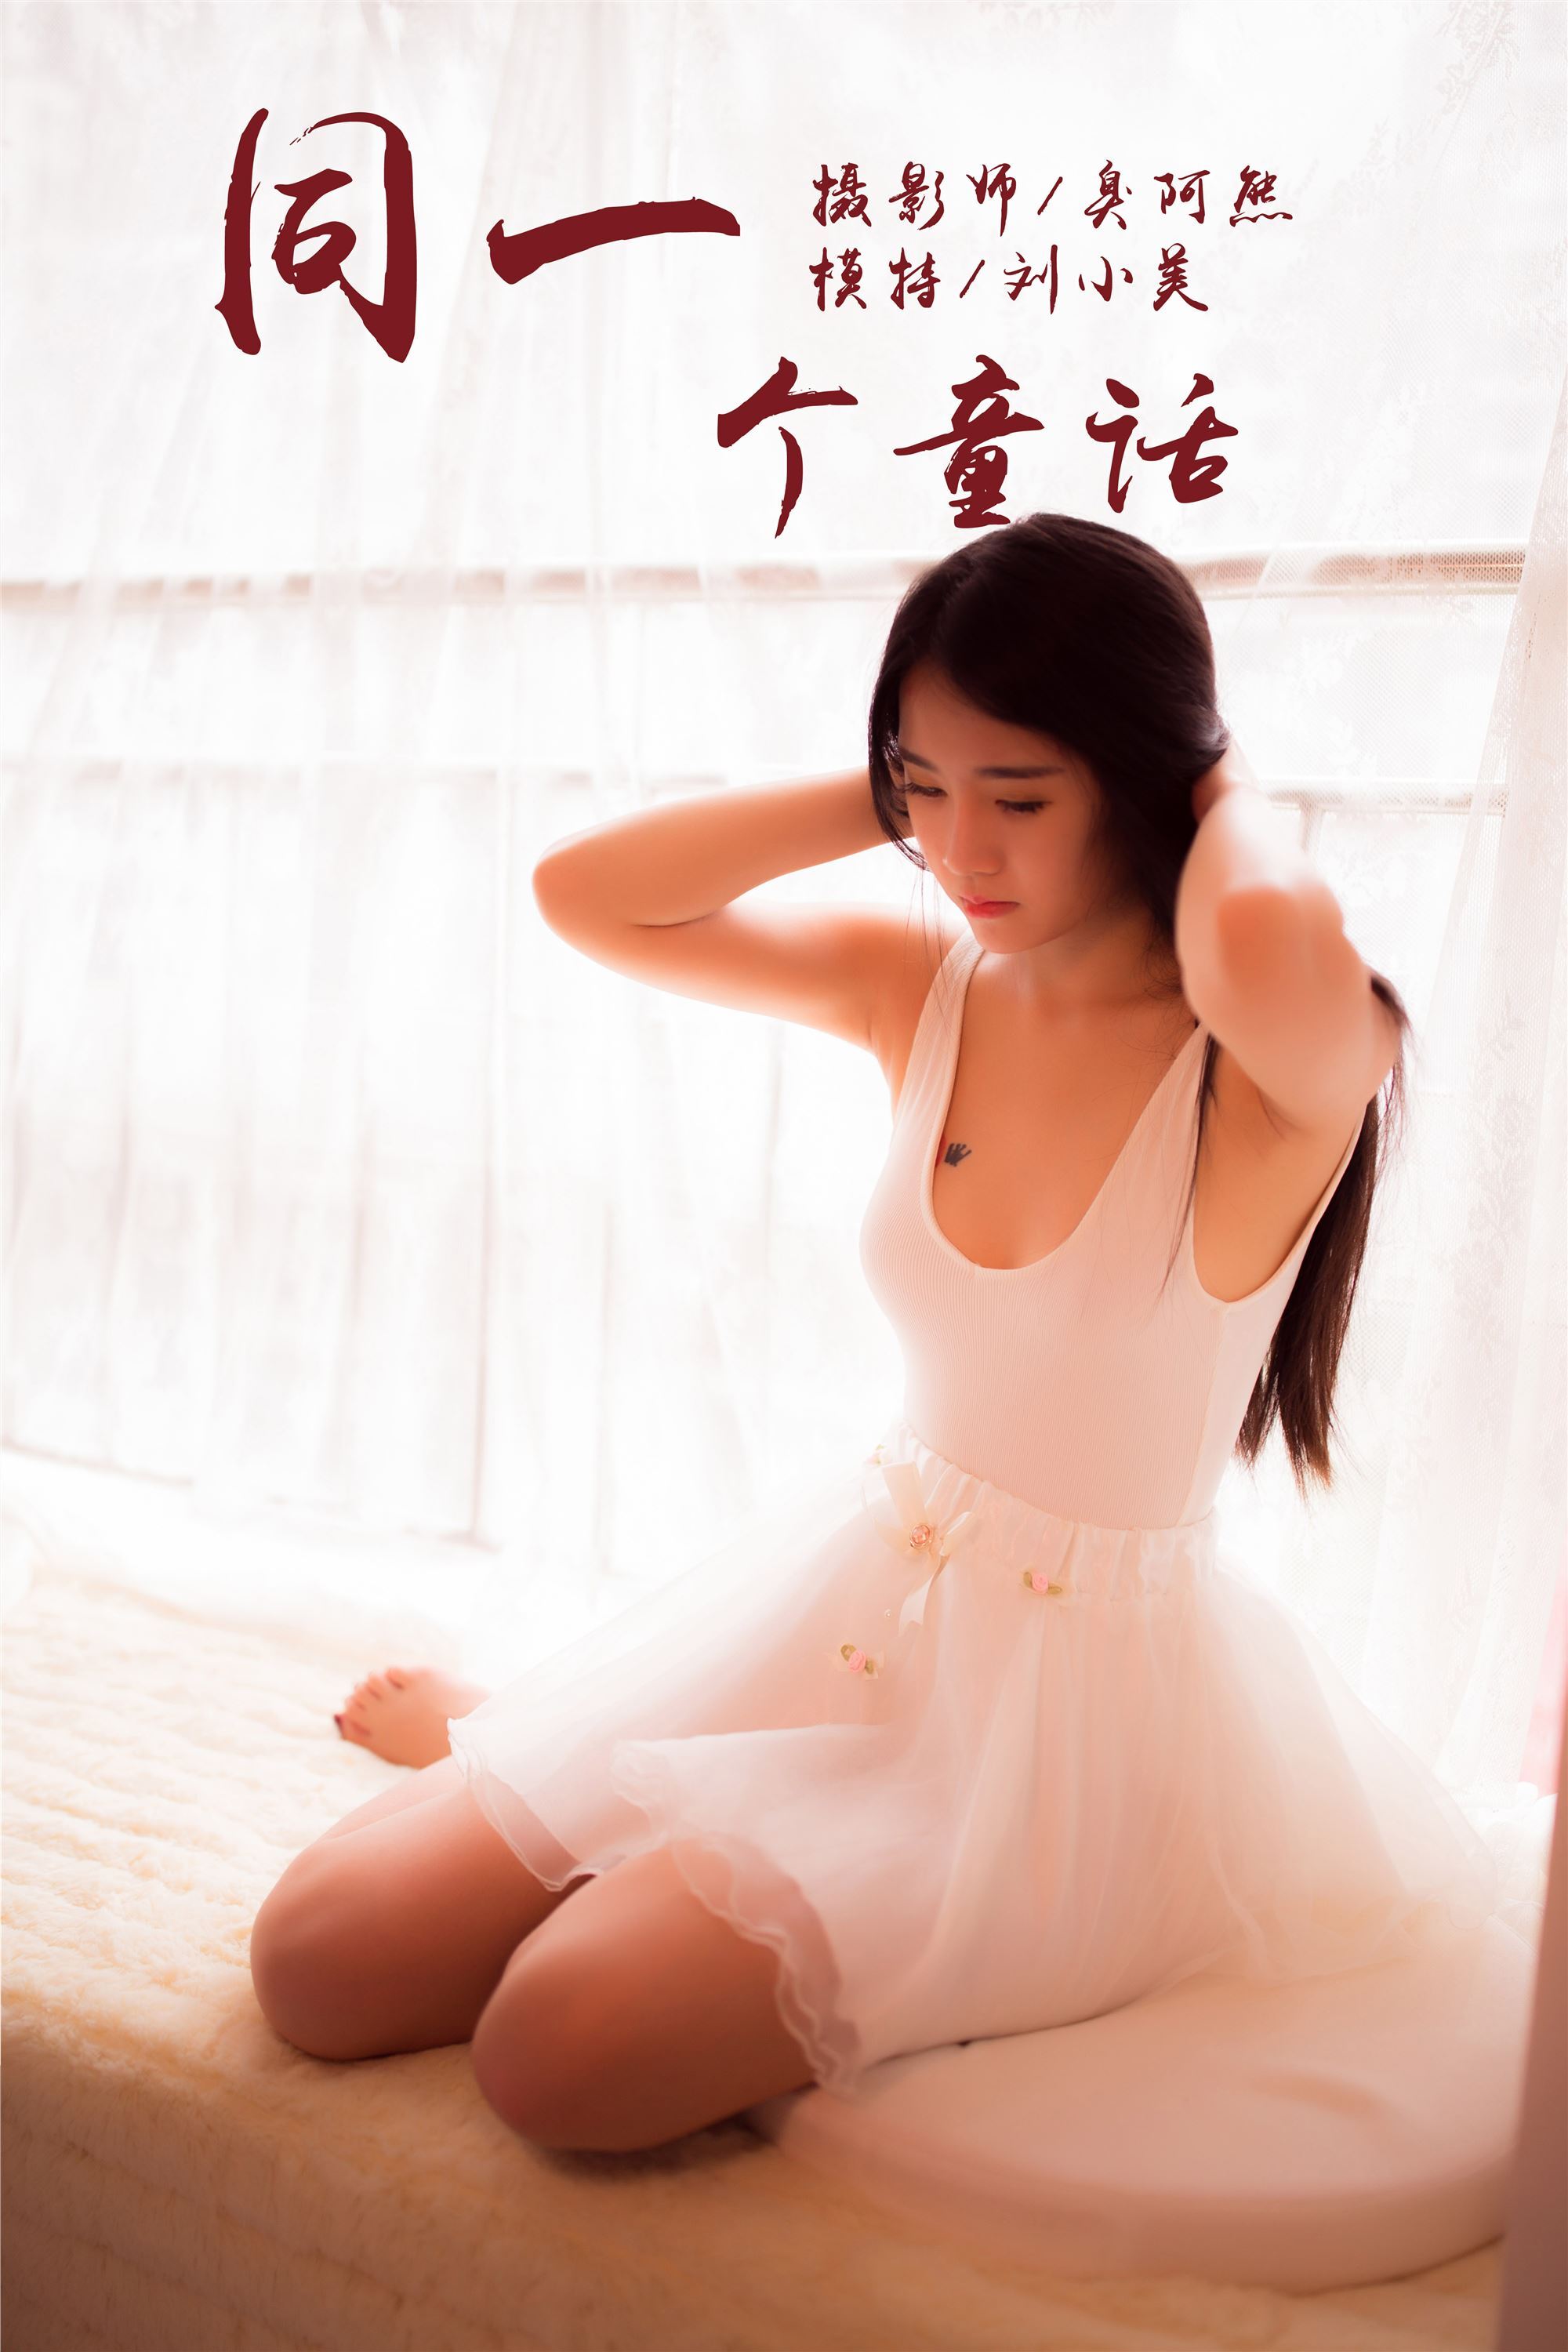 [yalayi yalayi] 2018.10.15 no.089 the same fairy tale Liu Xiaomei